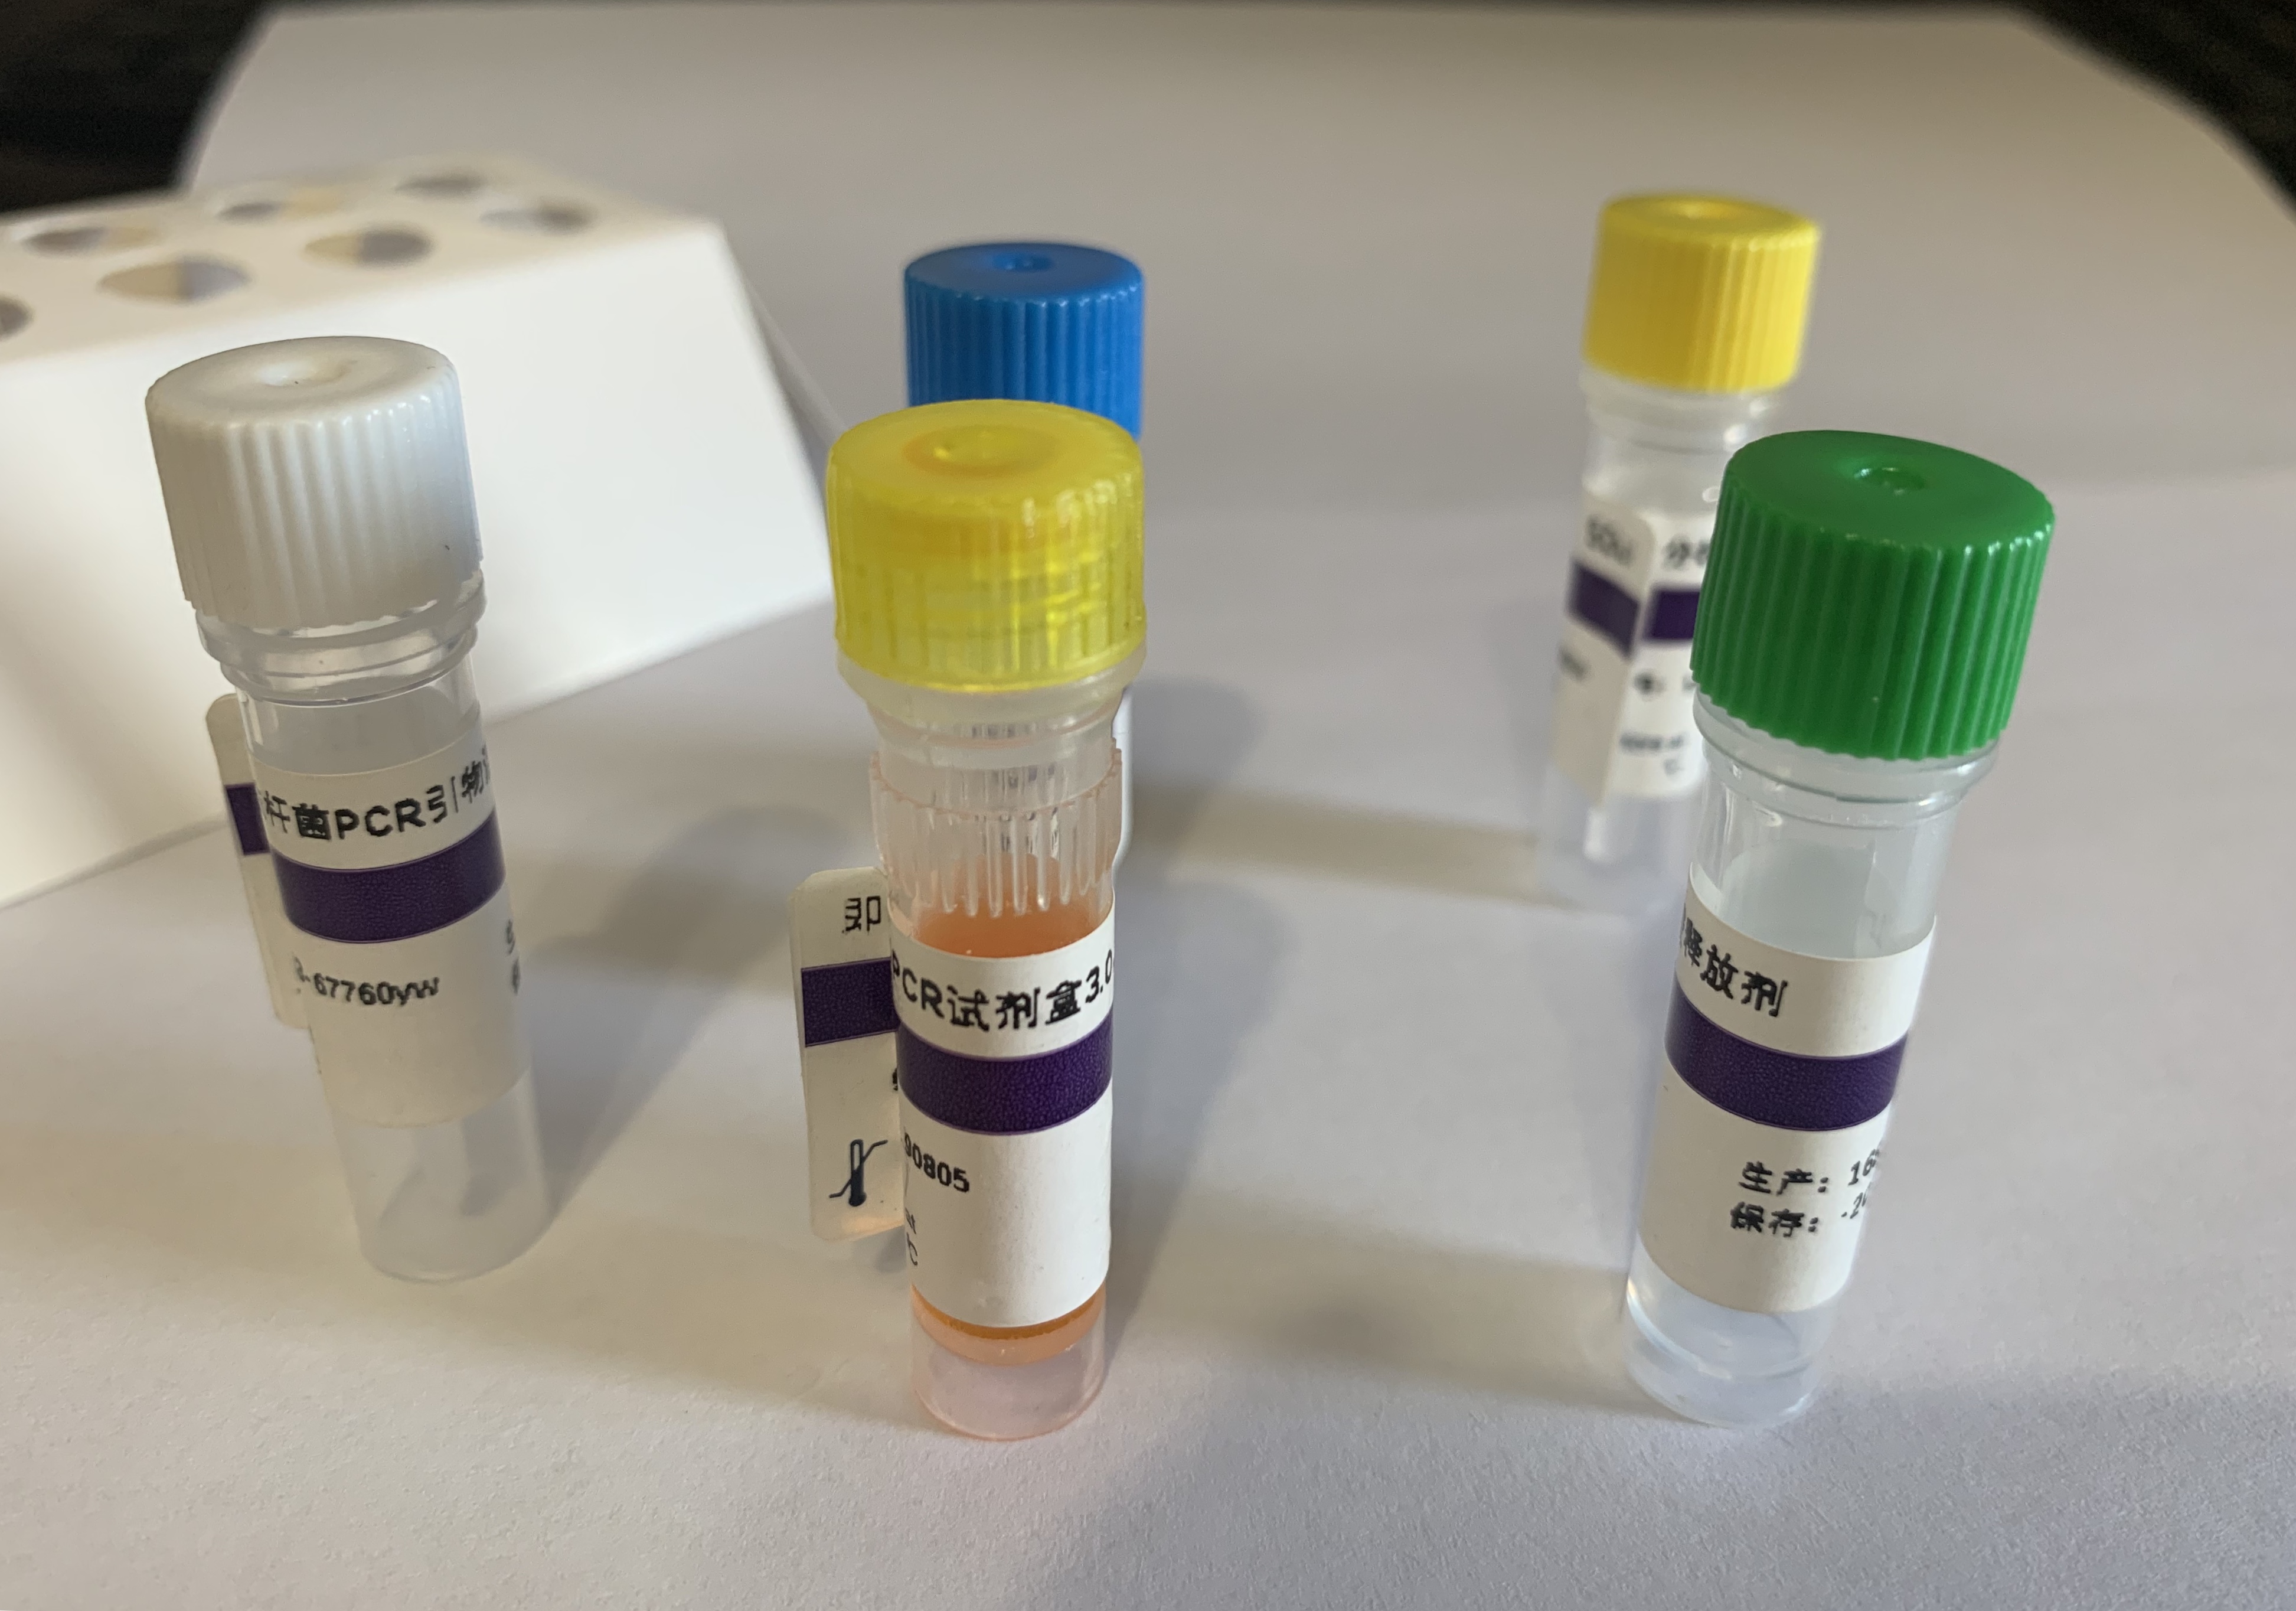 坏死性肝胰腺炎细菌(NHPB)核酸检测试剂盒(PCR法)